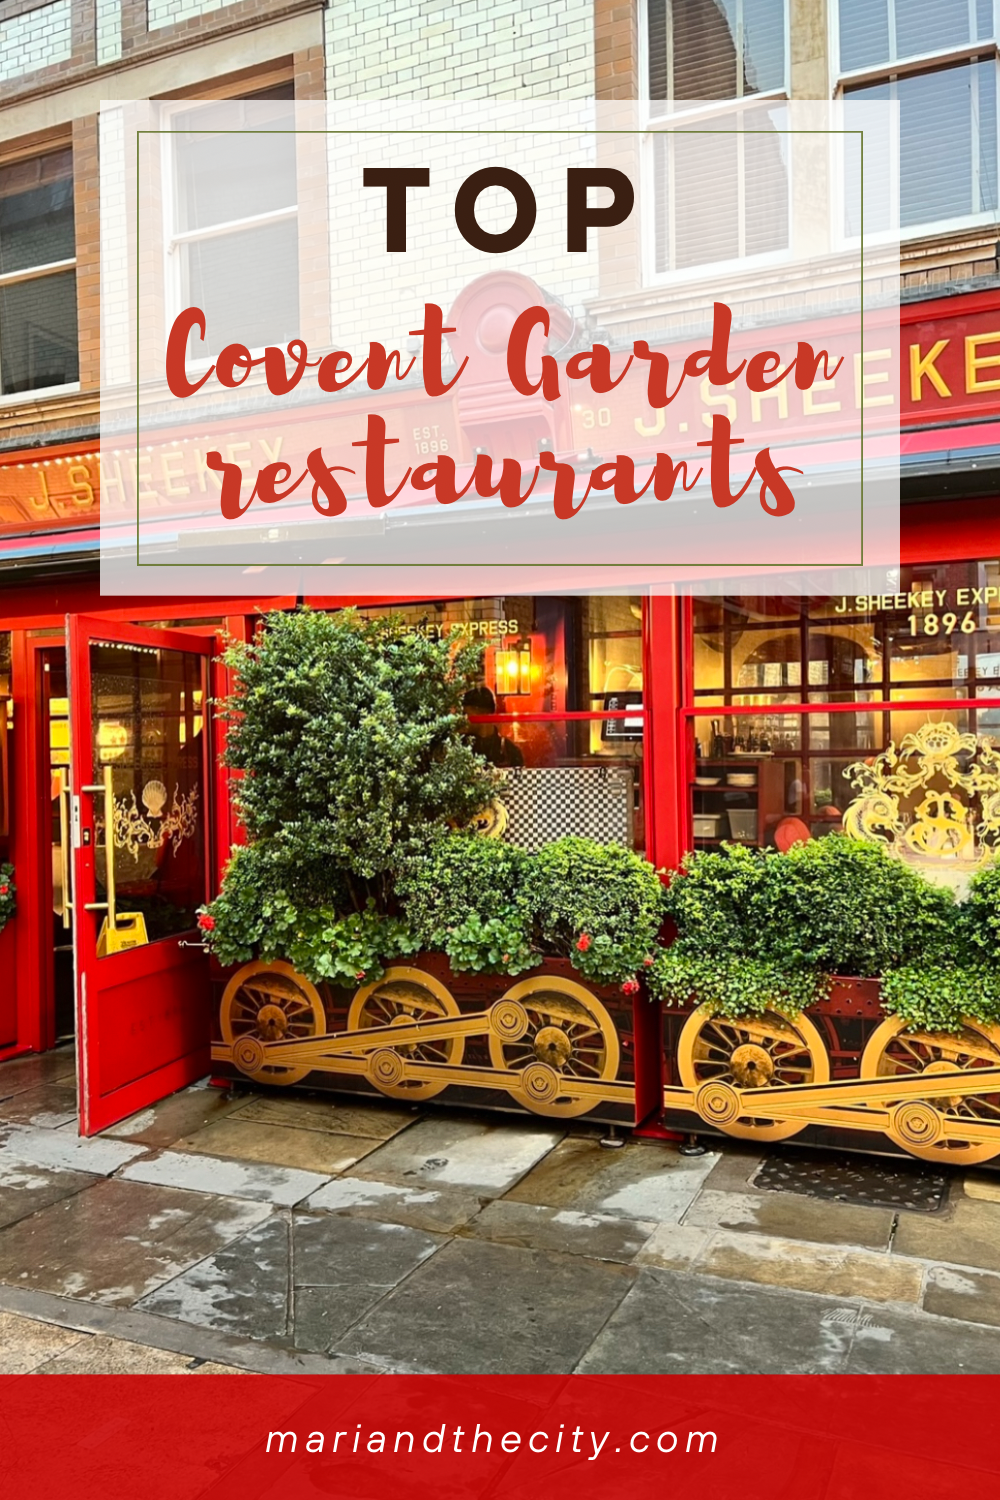 Top Covent Garden restaurants